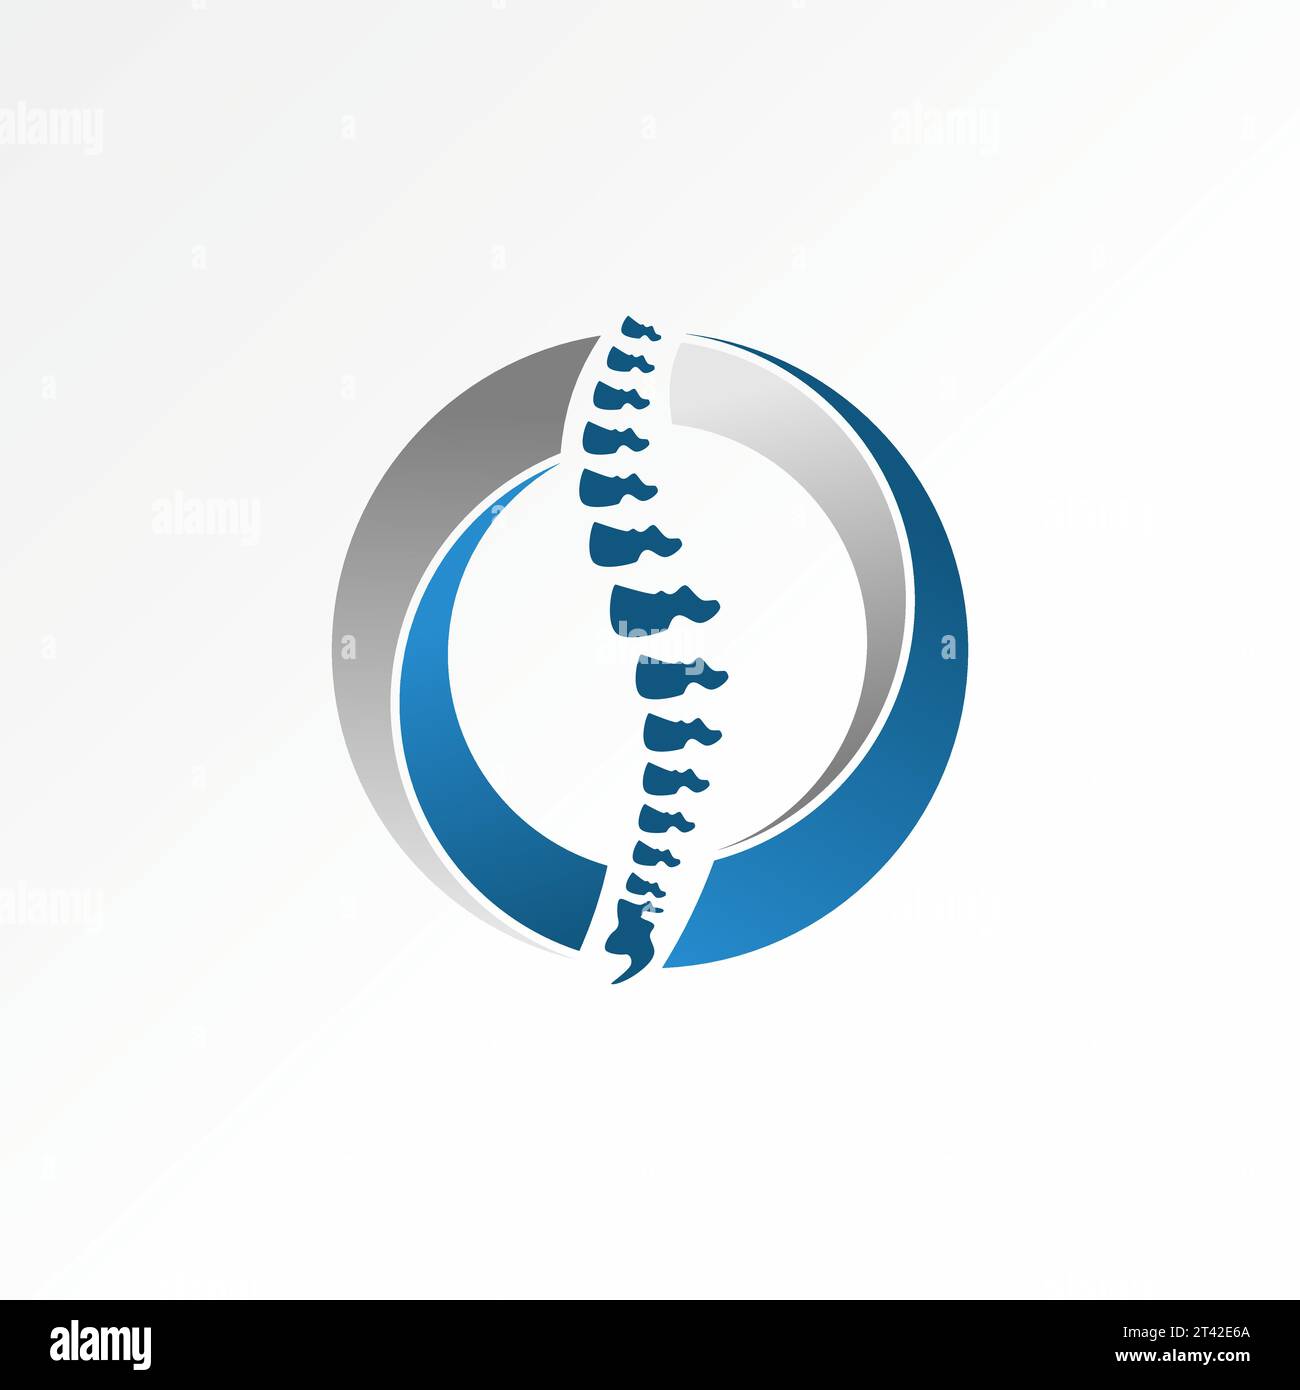 Logo-Design Grafikkonzept kreativer Premium abstrakter Vektor einzigartiger Wirbelknochen auf geschnittenem kreisförmigem Swoosh. Verwandt mit dem gesundheitlichen Physiotherapiesport Stock Vektor